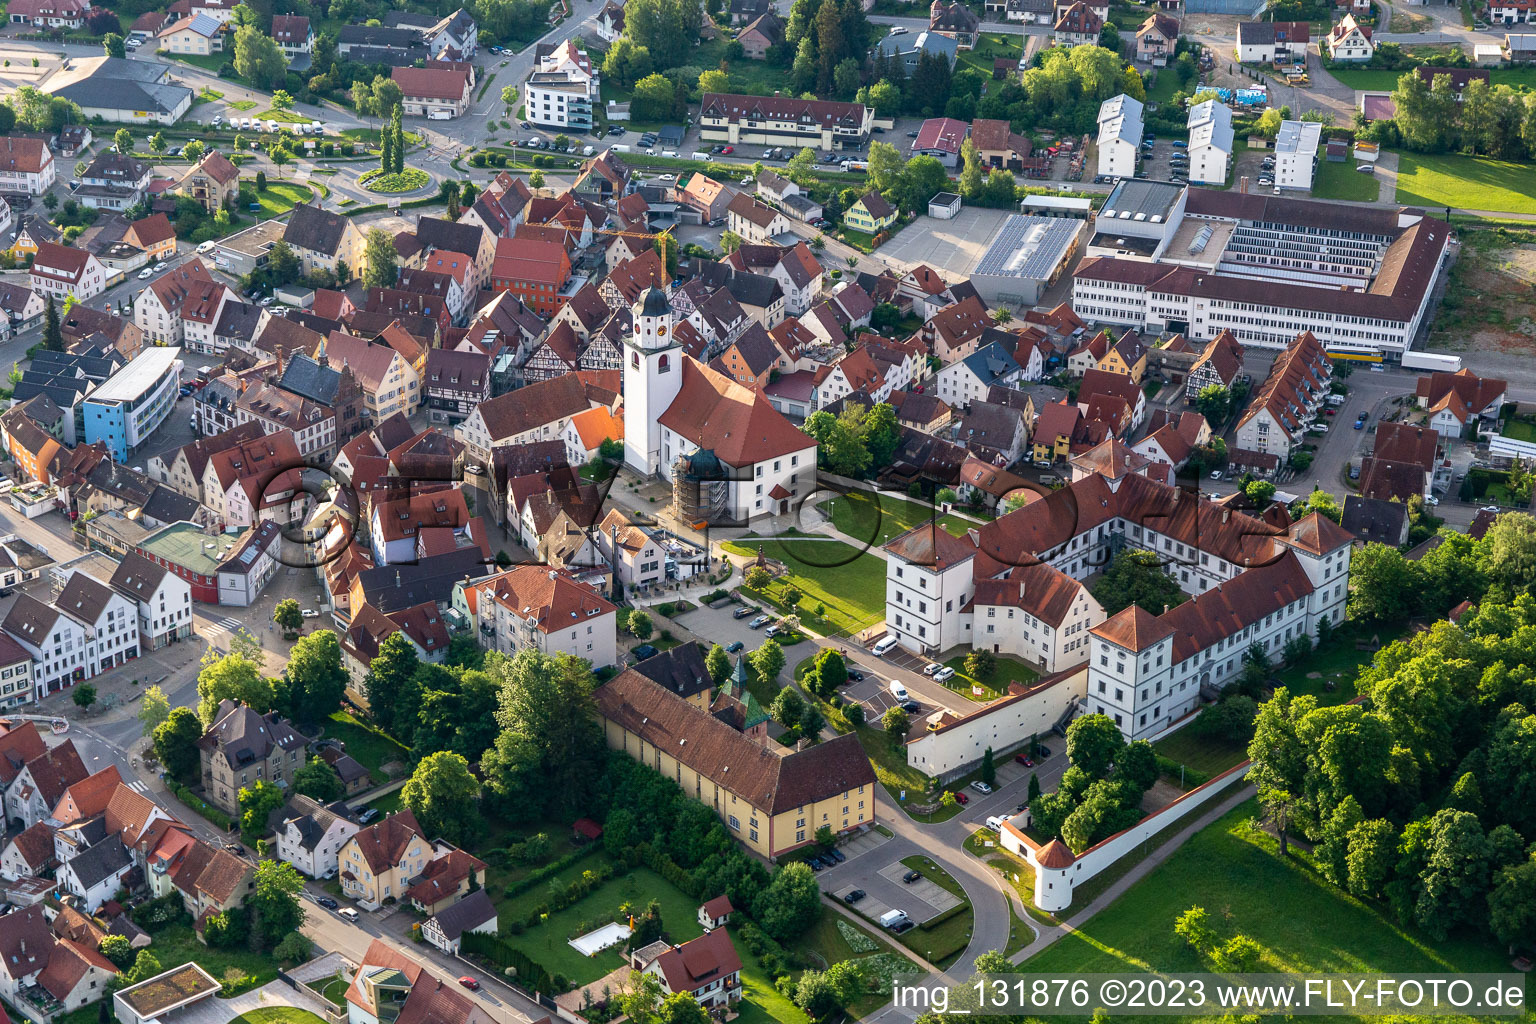 Vue aérienne de Château Meßkirch et église Saint-Martin à Meßkirch dans le département Bade-Wurtemberg, Allemagne